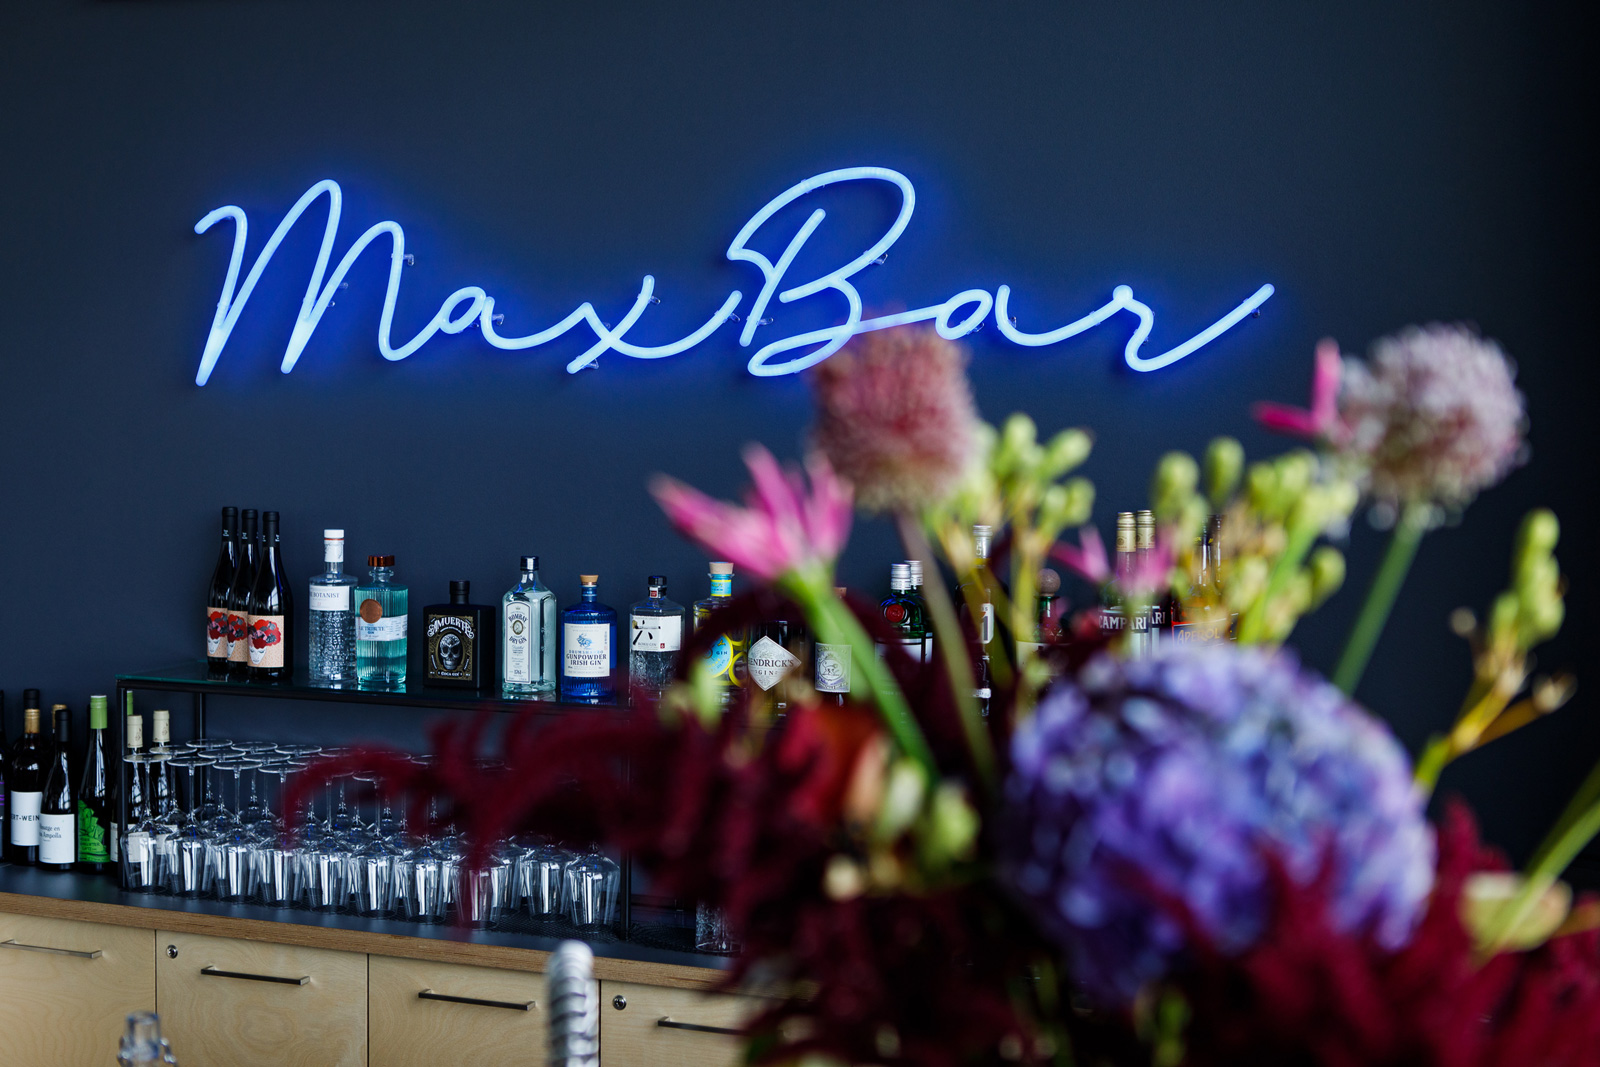 Die neue Bar im Bax Café, mit blauer Wand, blauer Neonleuchte als Schriftzug und modernem Look